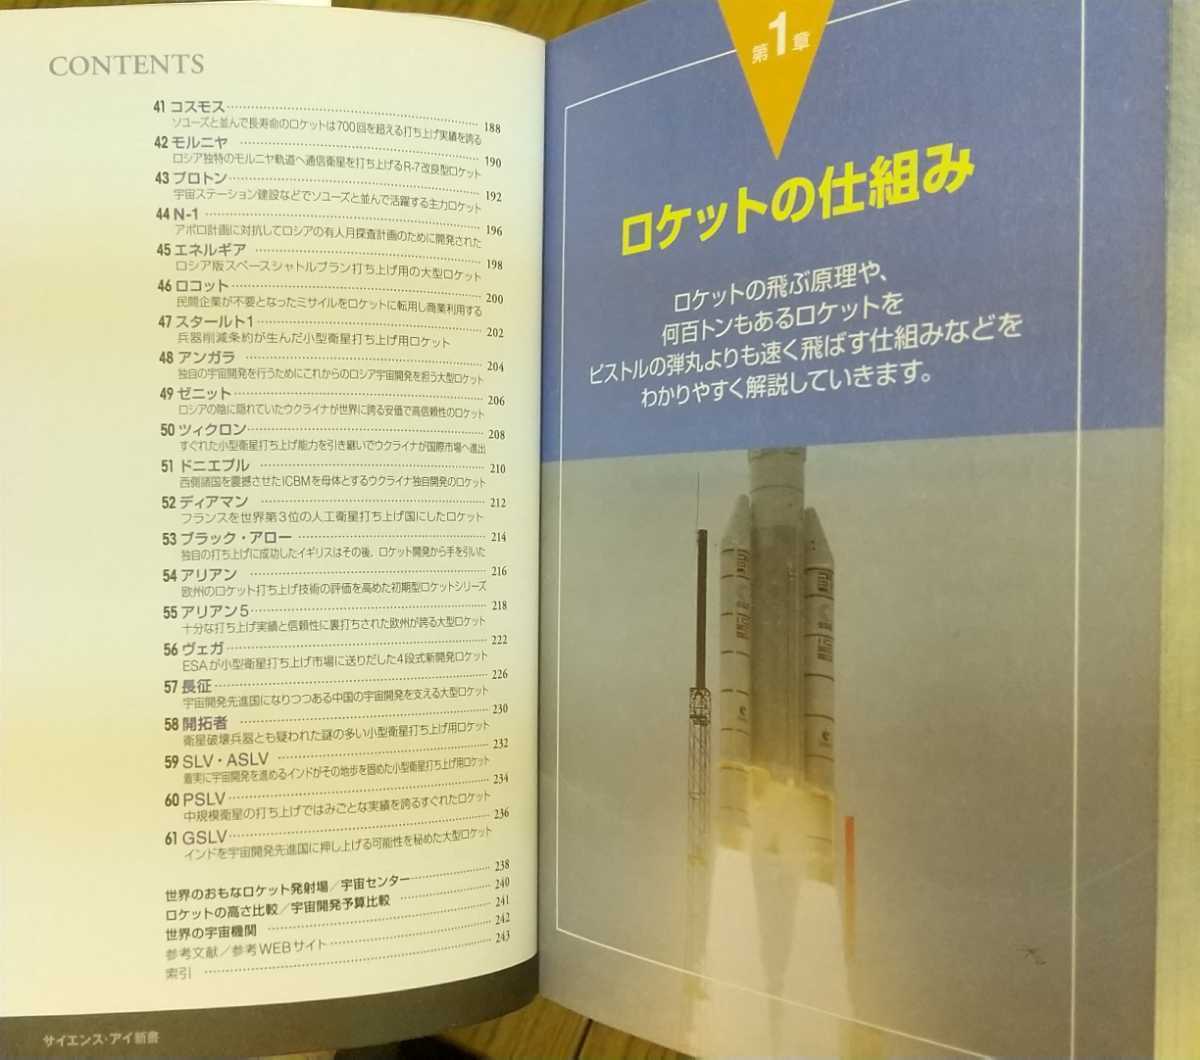 [ Rocket. наука ]... работа /SoftBankCreative. наука * I новая книга SIS-277[ первая версия первый ./ обычная цена 1100 иен + налог ]